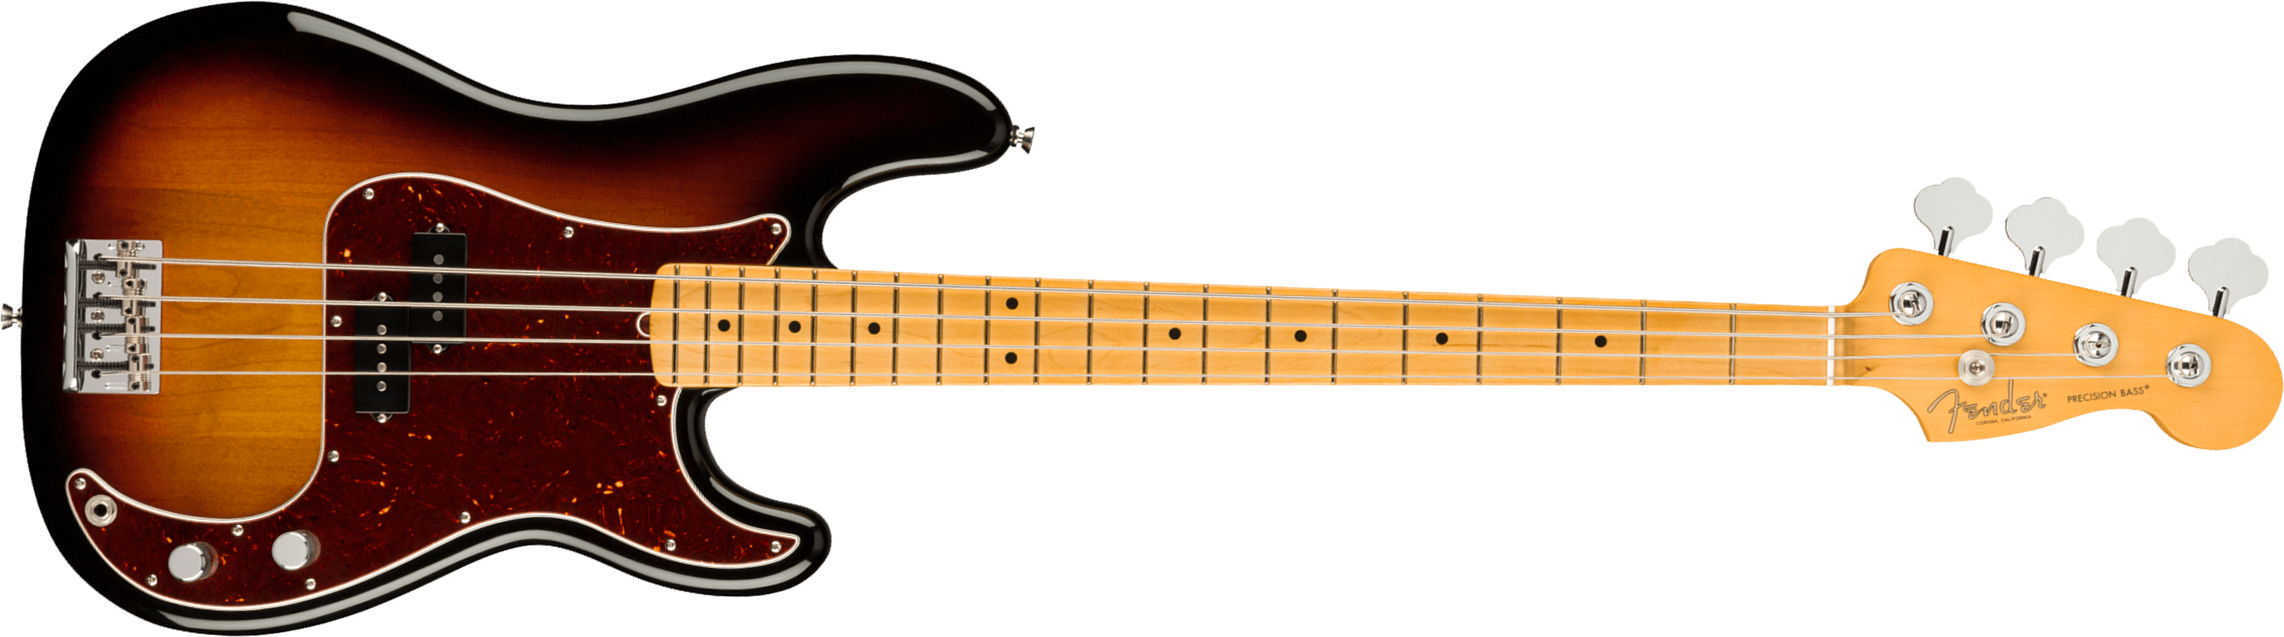 Fender Precision Bass American Professional Ii Usa Mn - 3-color Sunburst - Solidbody E-bass - Main picture